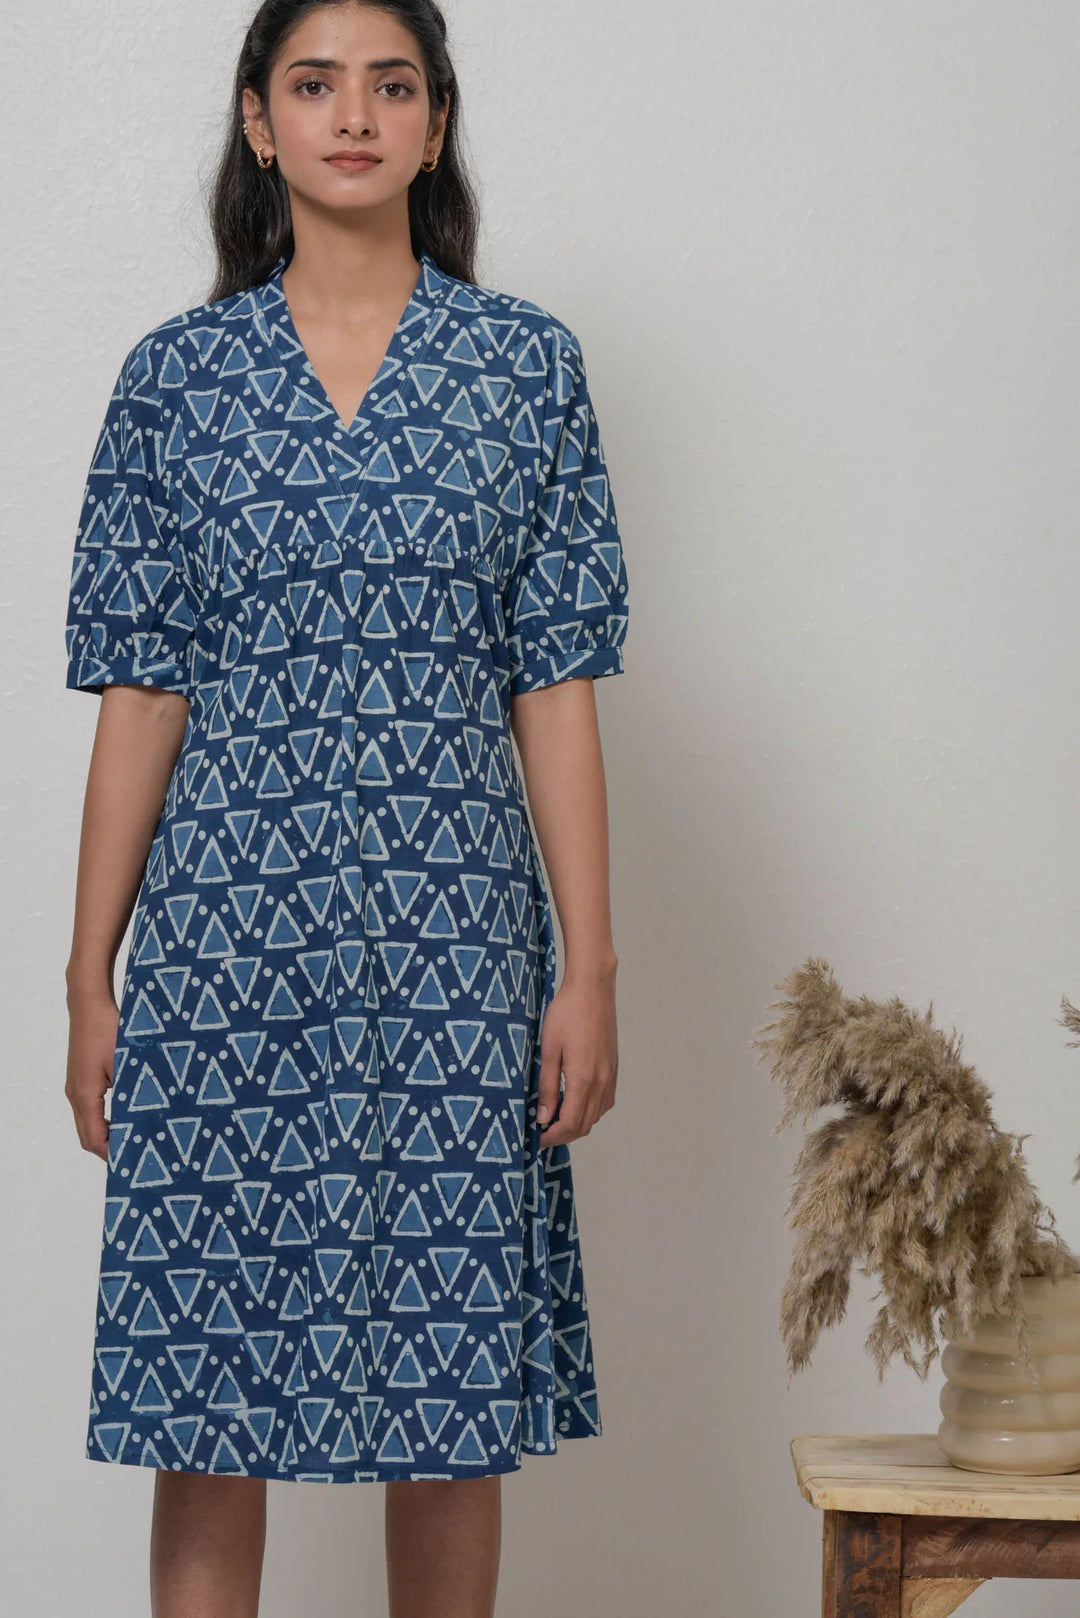 Handwoven Cotton Dress with Bagru Motifs - Summer Classic | Aika Handwoven Cotton Dress - Blue